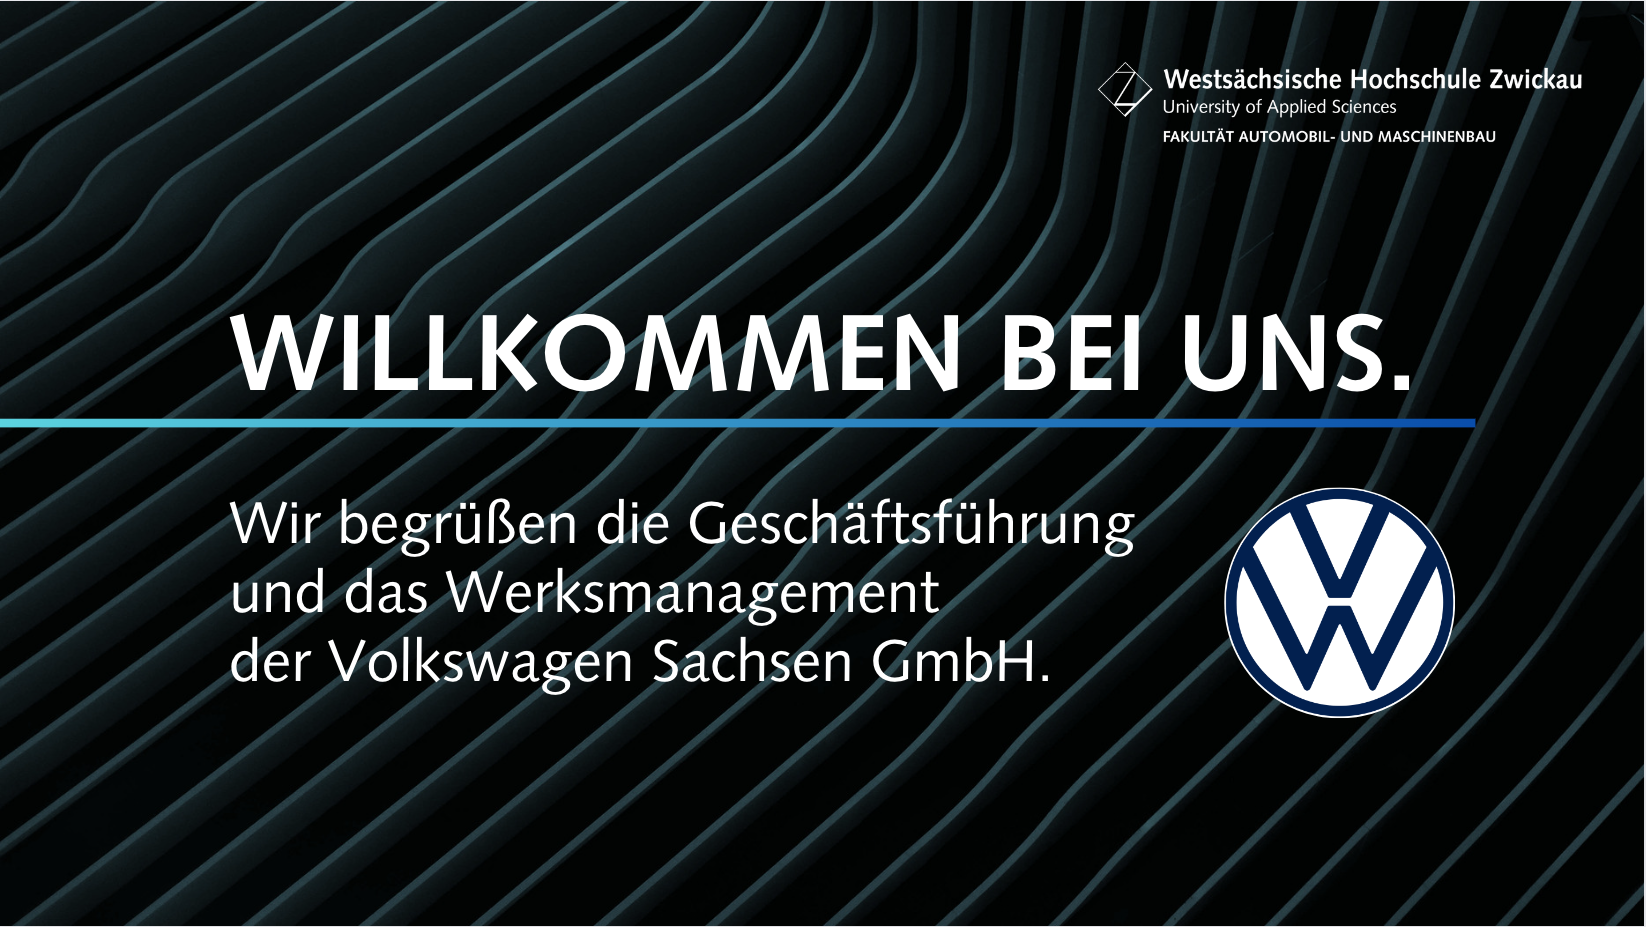 Abbildung: WHZ- Besuch der Geschäftsführung und des Werksmanagement der Volkswagen Sachsen GmbH